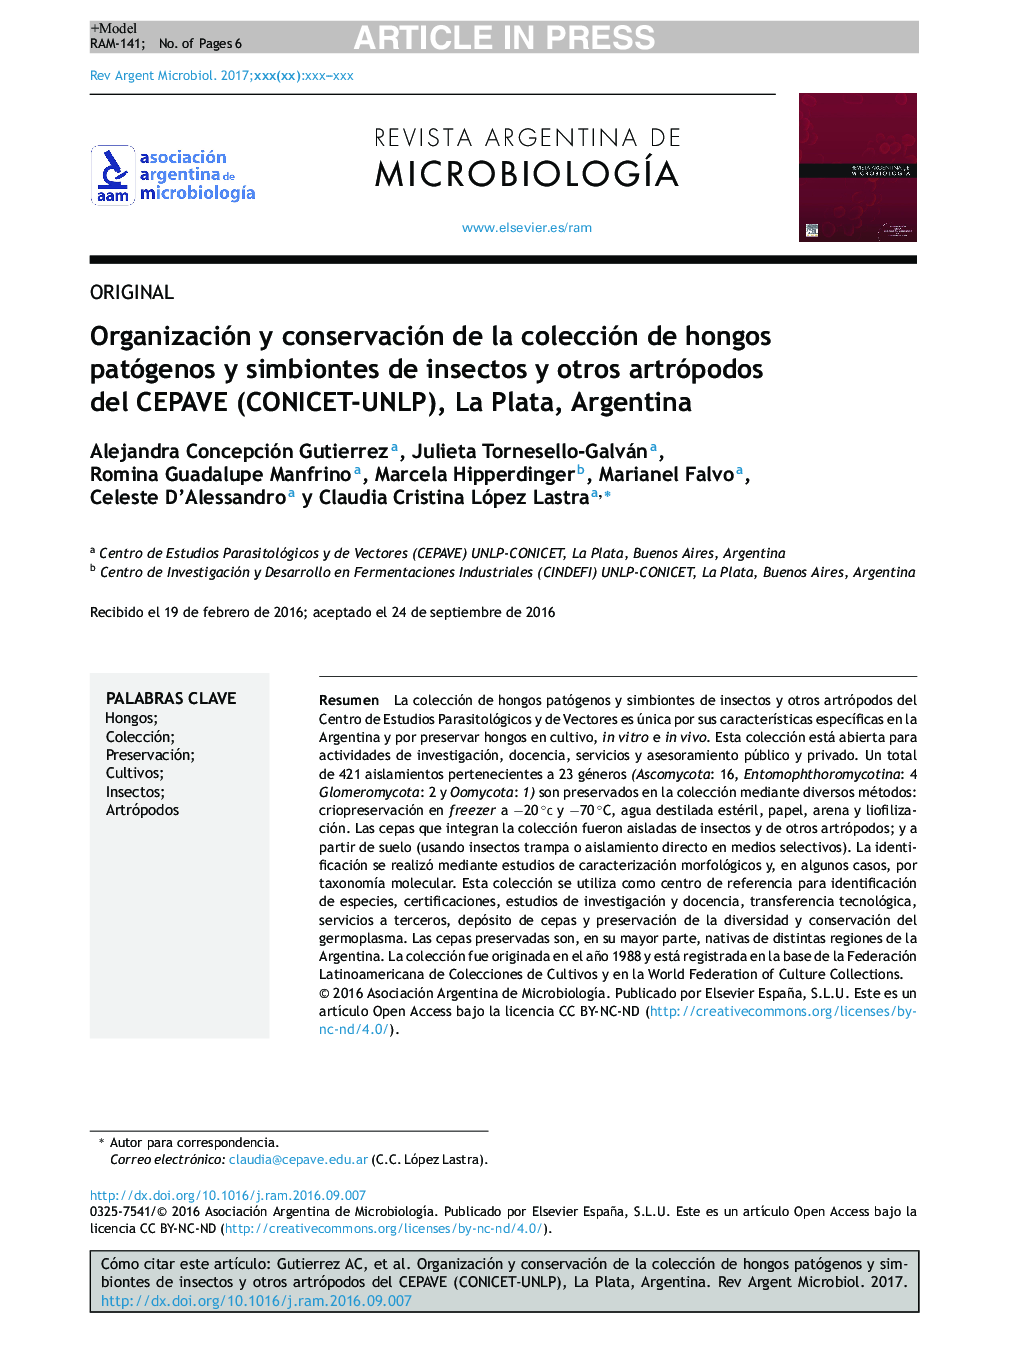 Organización y conservación de la colección de hongos patógenos y simbiontes de insectos y otros artrópodos del CEPAVE (CONICET-UNLP), La Plata, Argentina